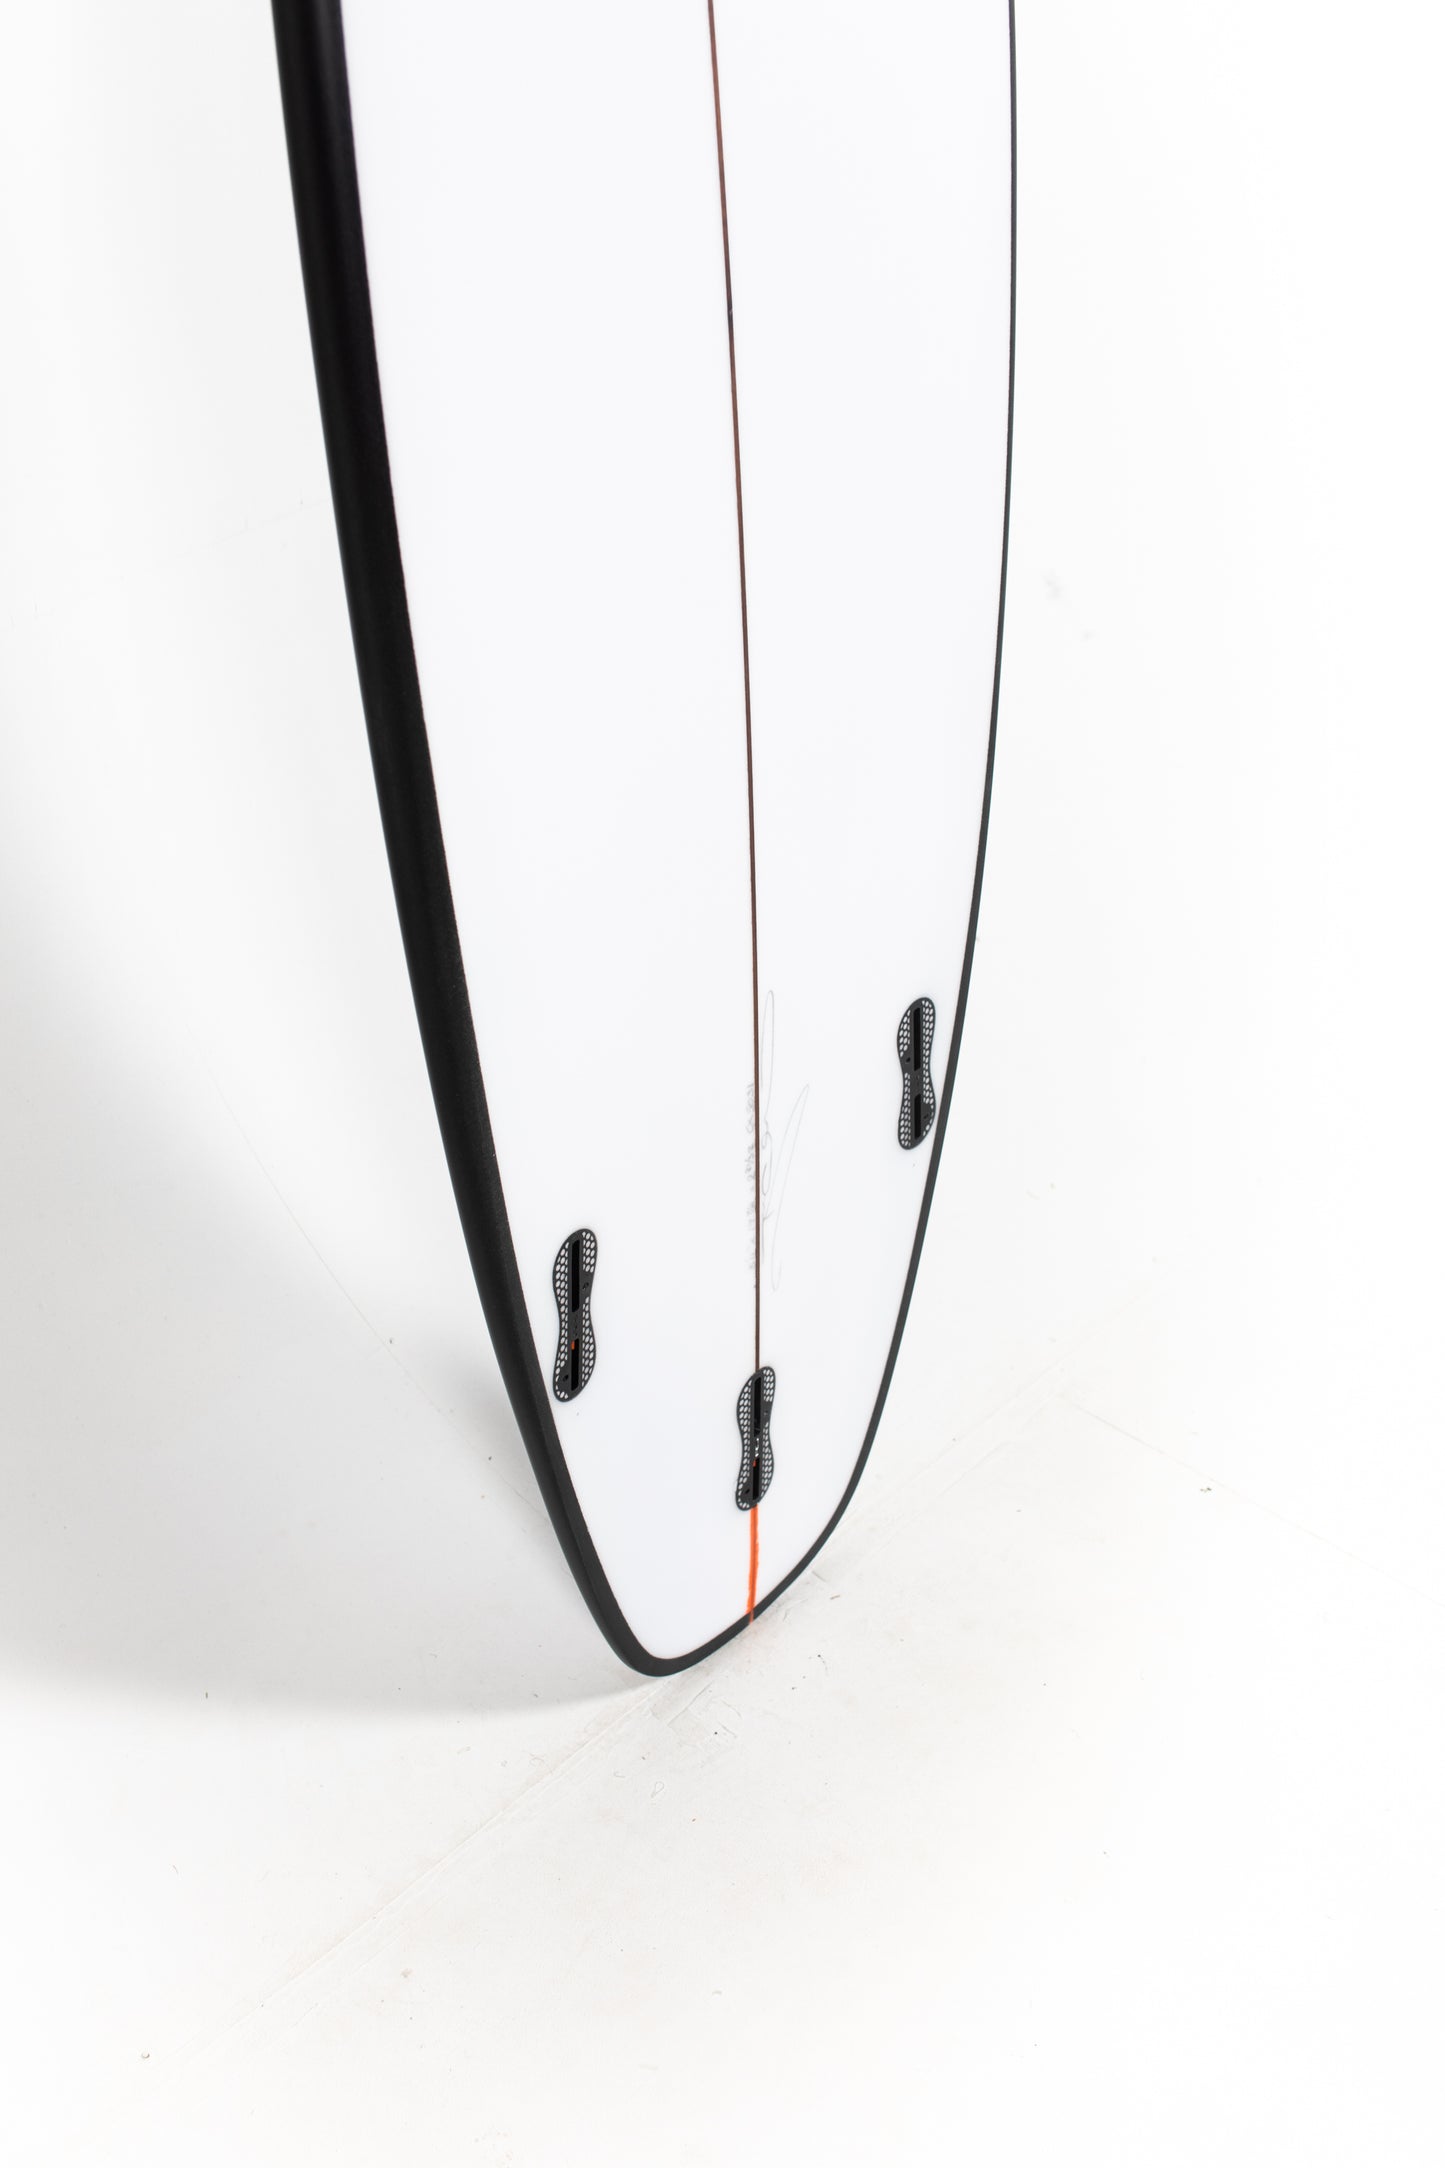 
                  
                    Pukas Surf Shop - Christenson Surfboards - OP1 - 5'11" x 19 7/8 x 2 11/16 x 33.48L - CX05031
                  
                